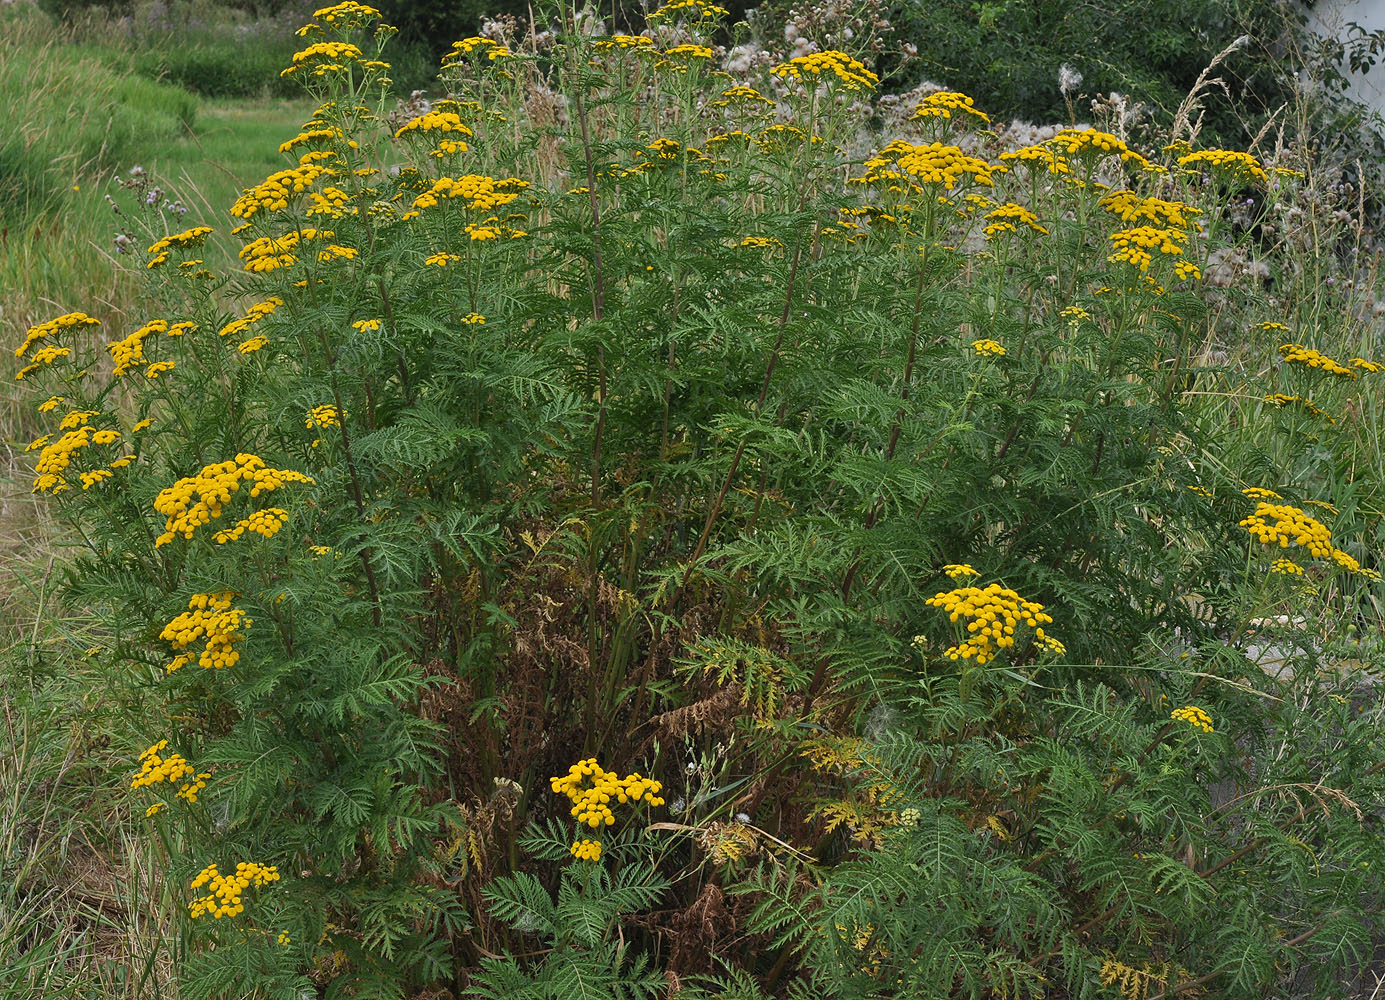 Flora of Eastern Washington Image: Tanacetum vulgare